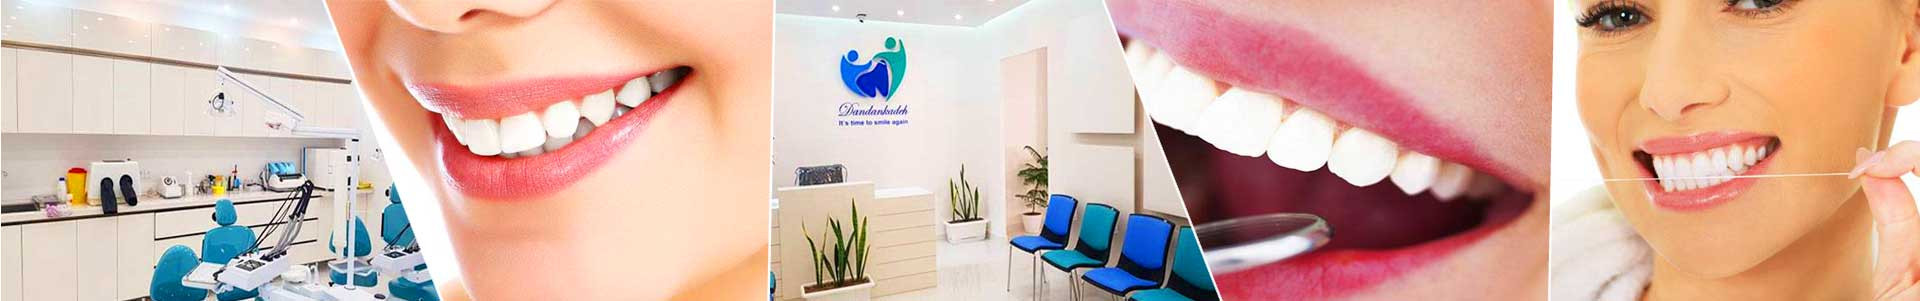 بهترین خرید مطب دندانپزشکی دکتر قائمی تهران با بیشترین درصد تخفیف در قیمت - 83%